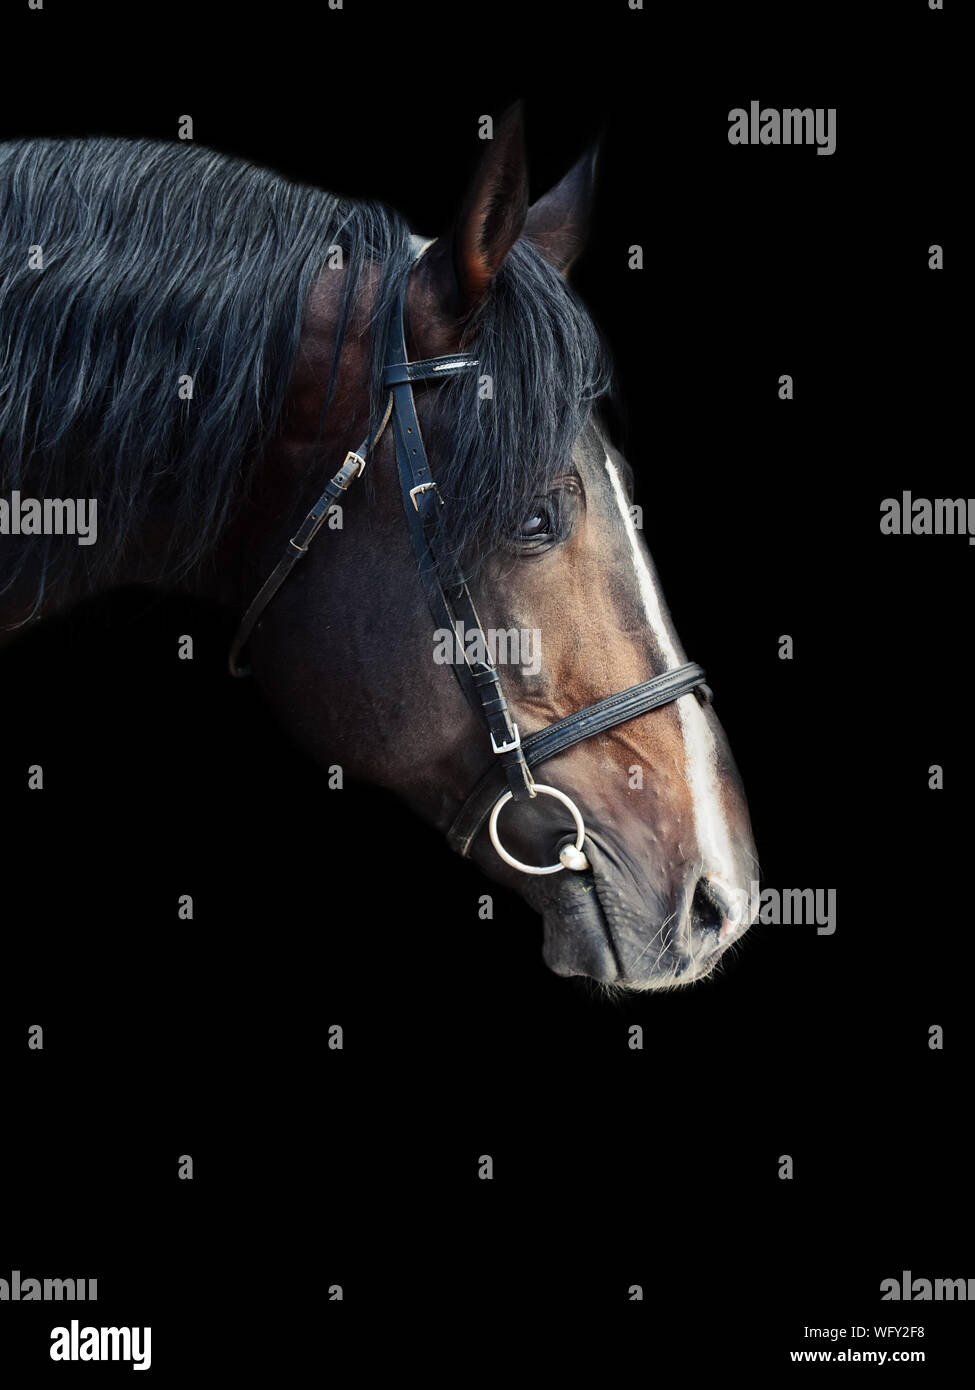 Profil anzeigen von Pferd auf schwarzem Hintergrund Stockfoto